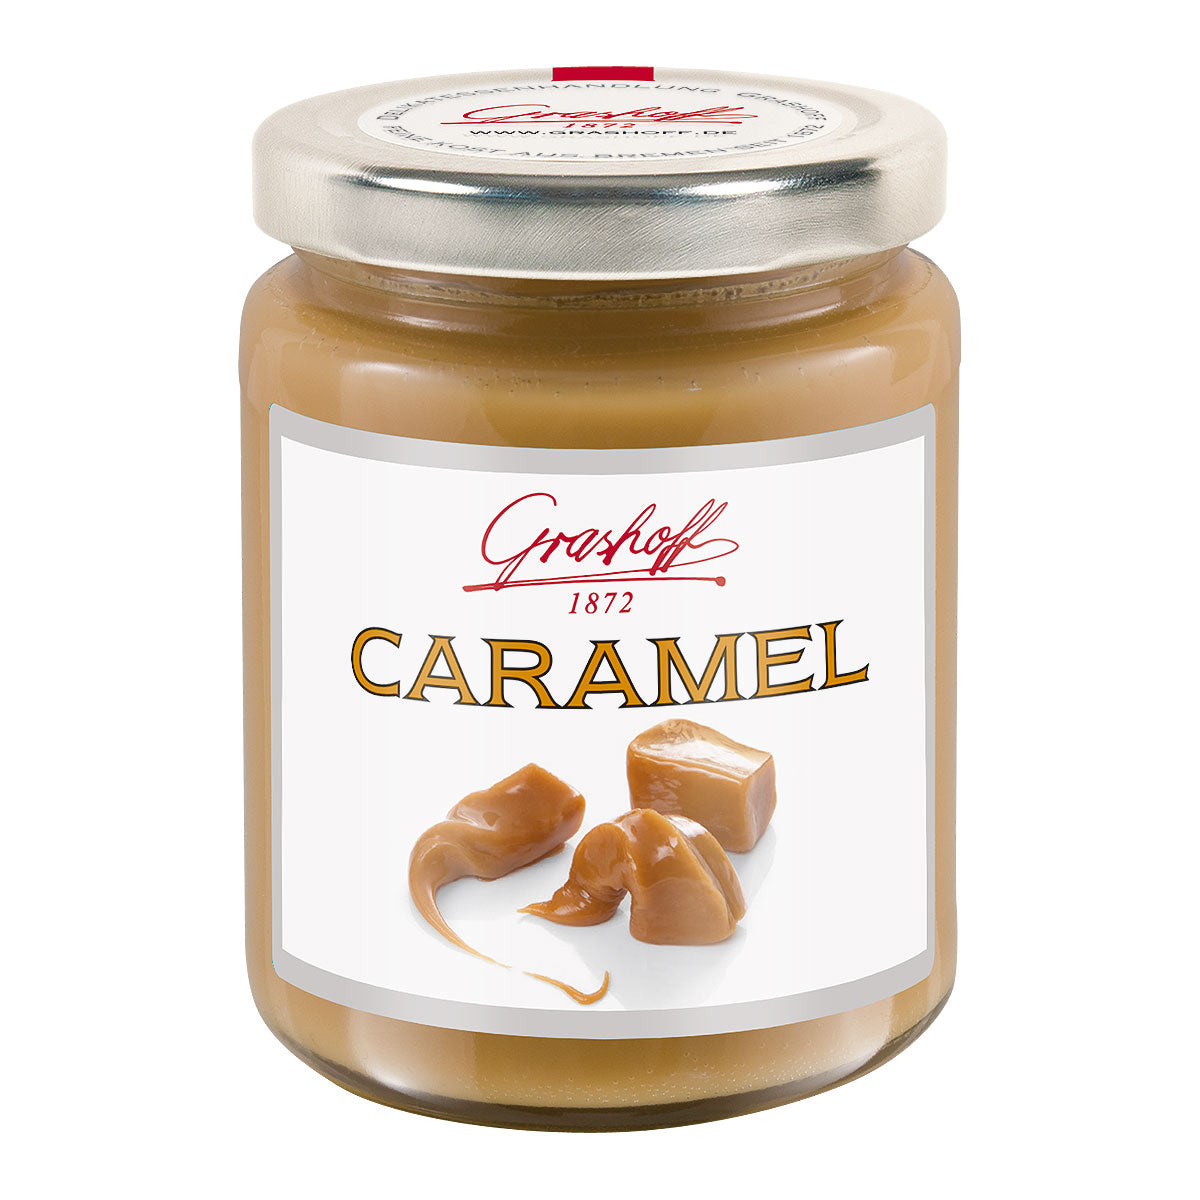 Caramel - pure pleasure